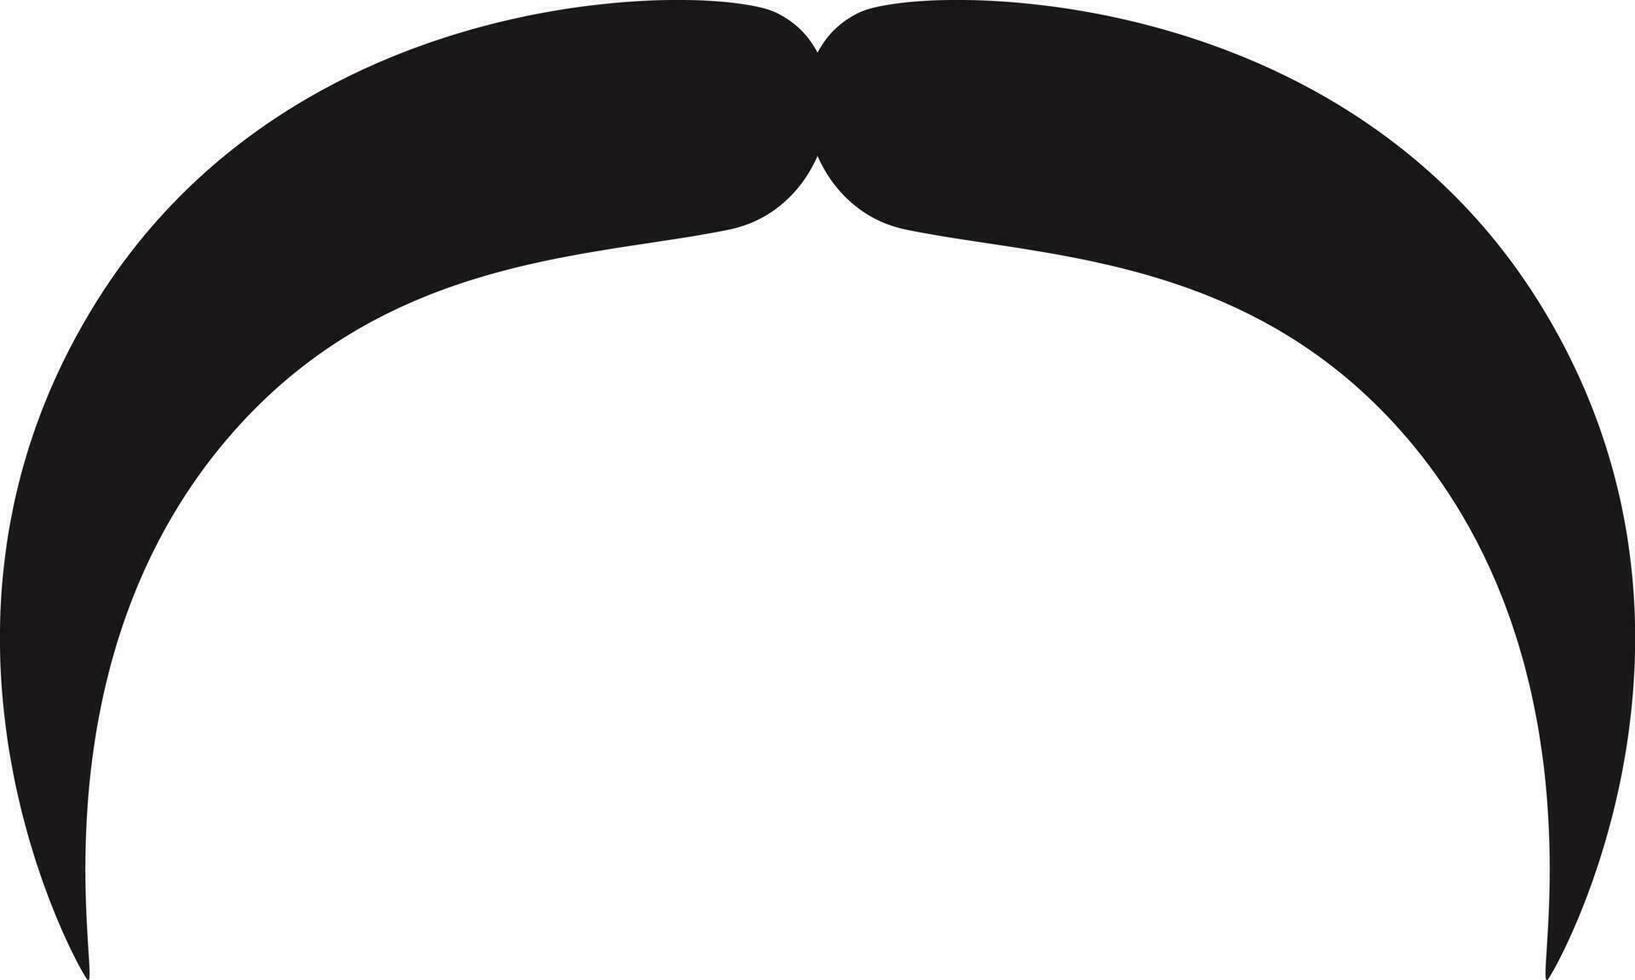 moustache cartoon illustration vector